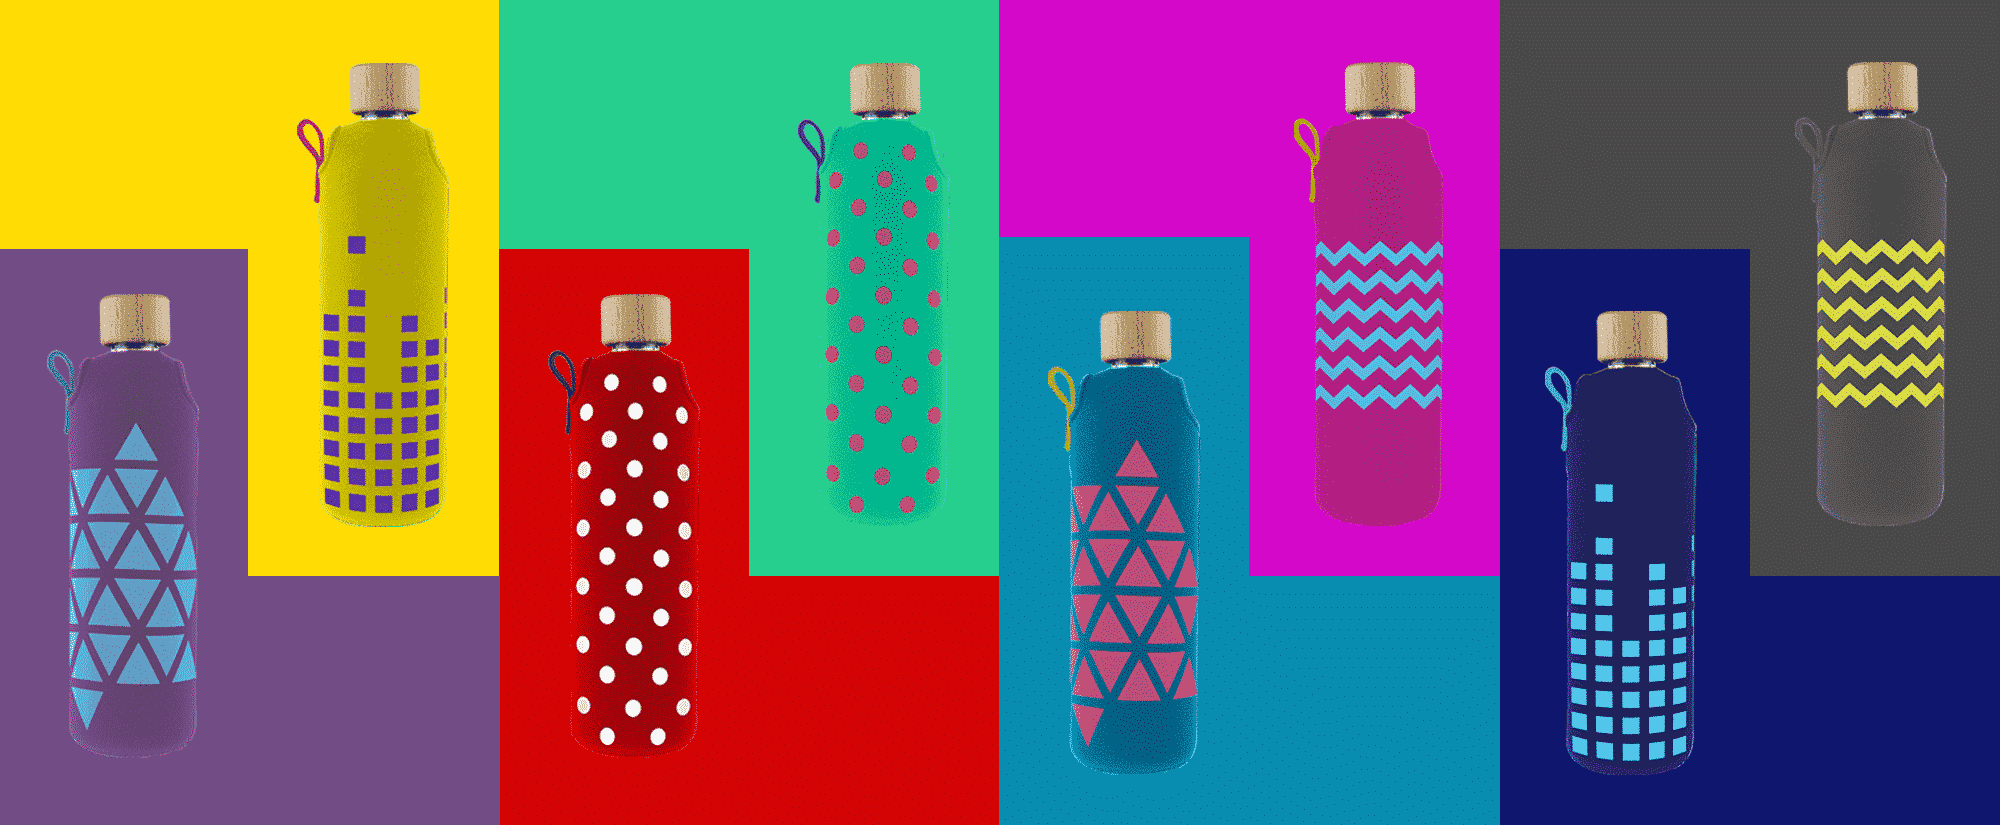 Skleněné láhve na pití v barevném neoprenovém obalu